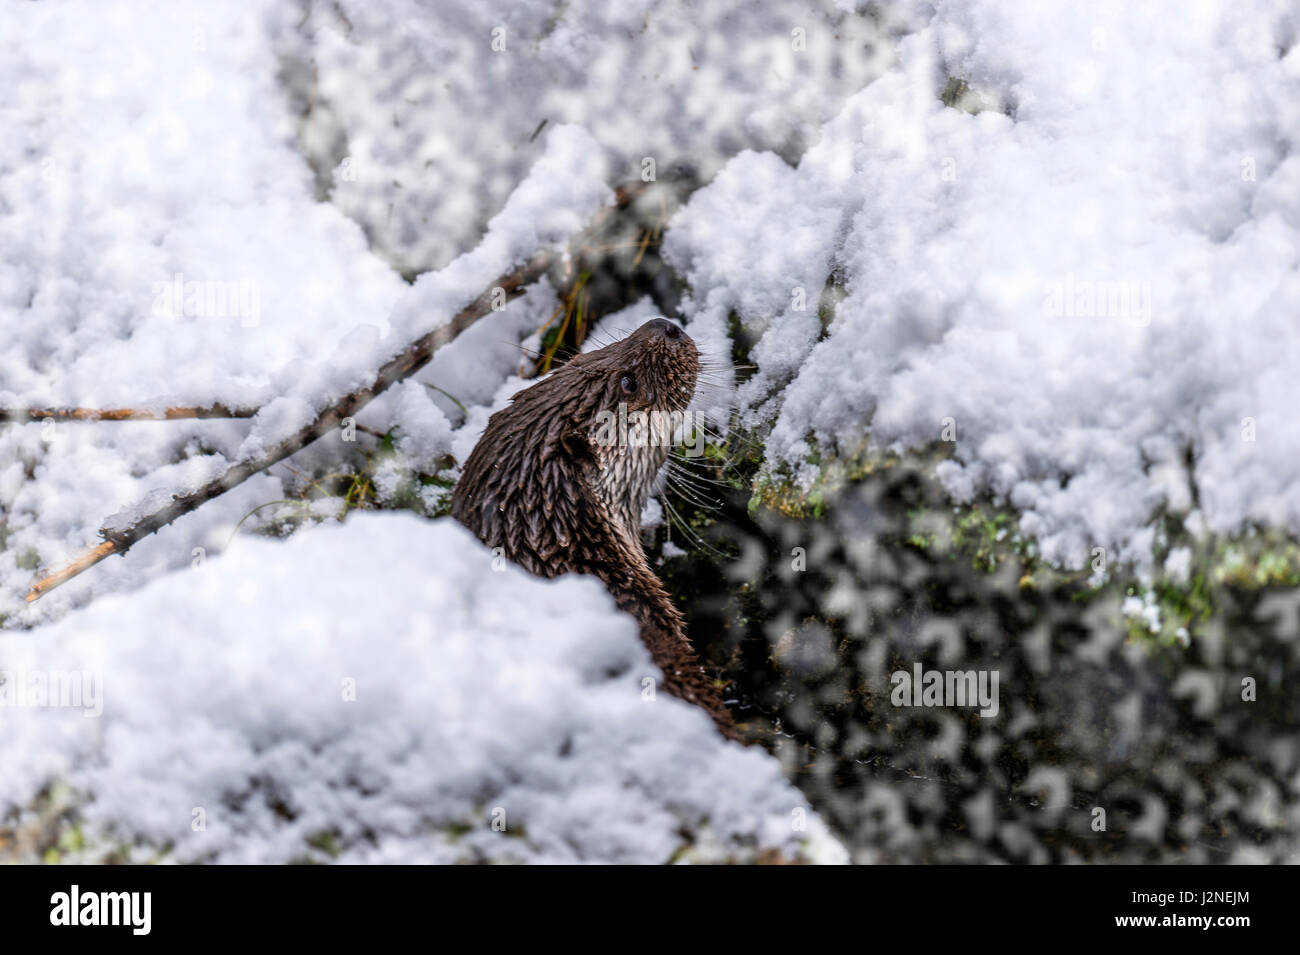 Hermosa Euroasiática de la nutria (Lutra lutra) representada asomándose desde un hueco entre una grieta rocosa en un invierno Snow Drift. Foto de stock